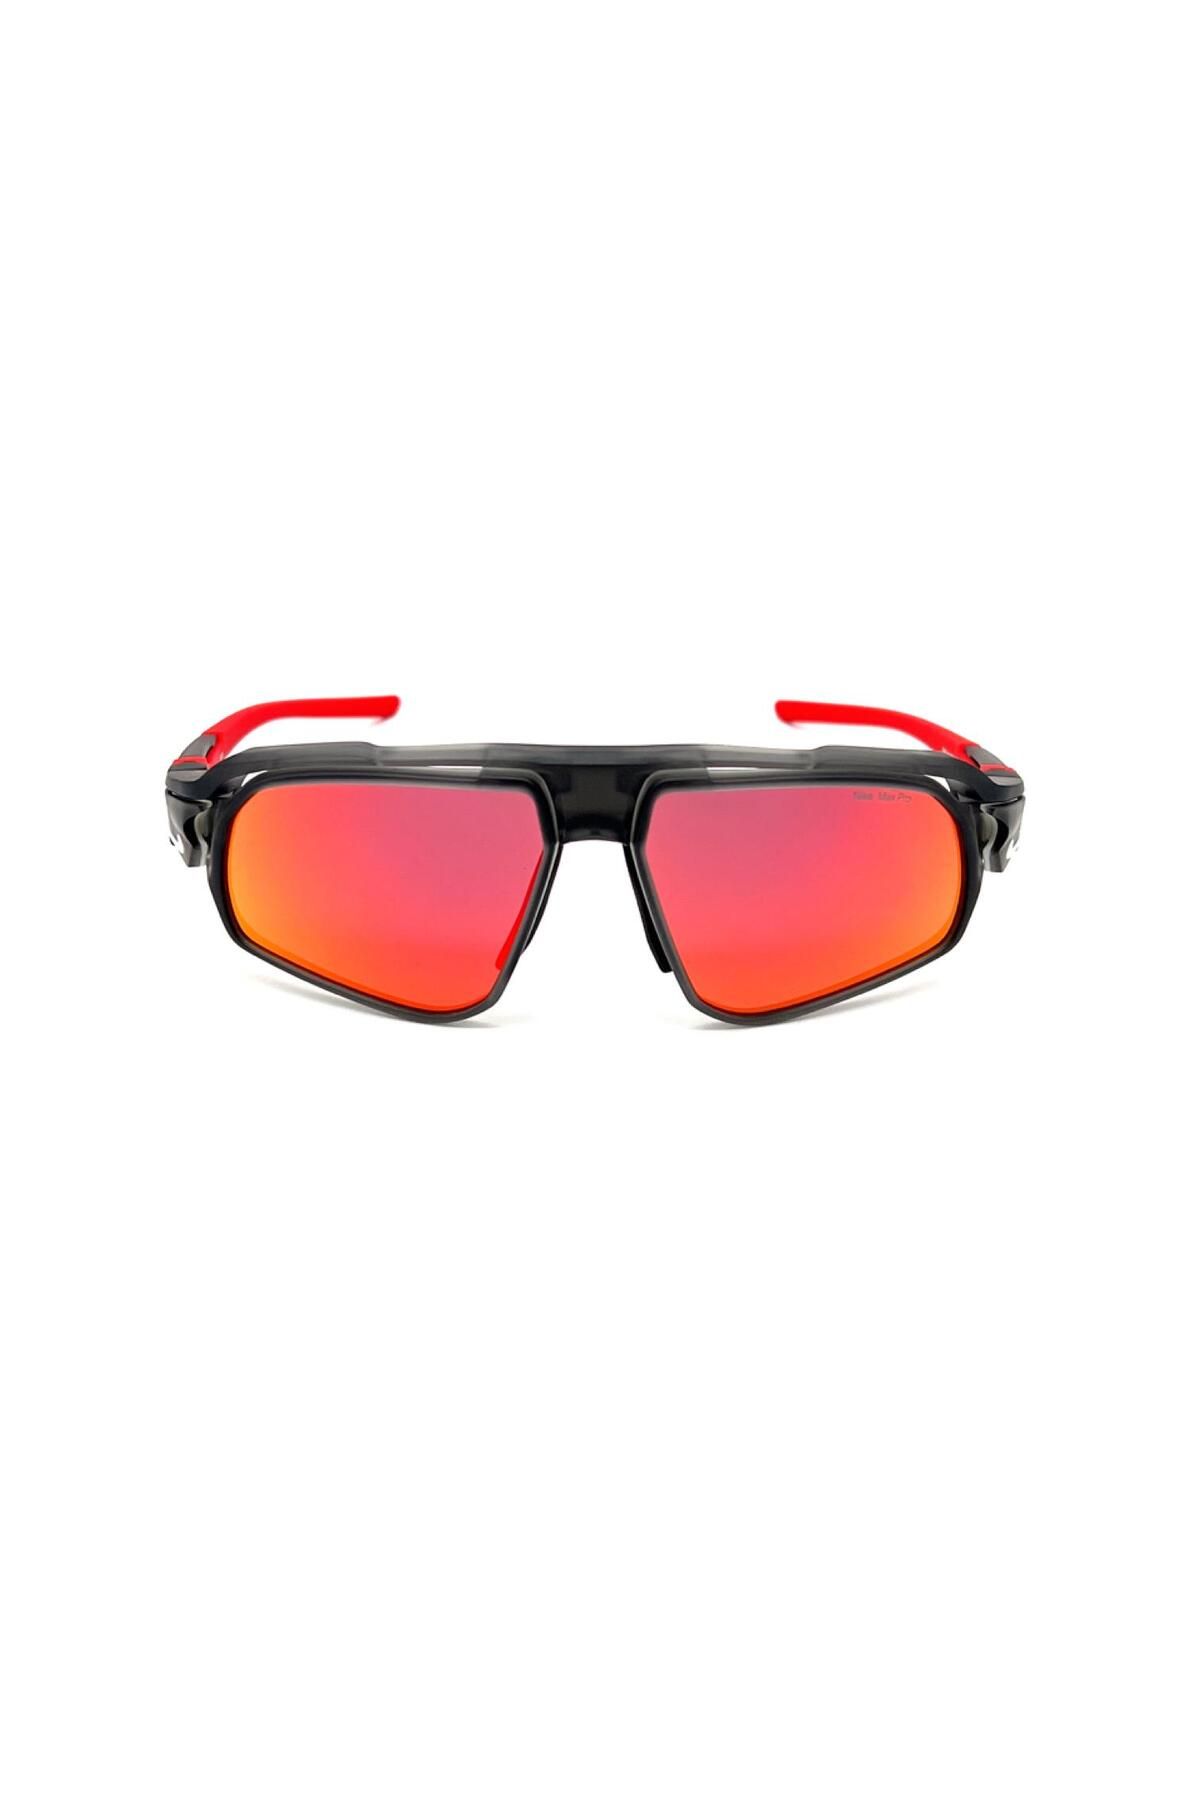 Nike Flyfree M FV2391 060 59 Outdoor Kırmızı Aynalı Değiştirilebilir Camlı Füme Güneş Gözlüğü